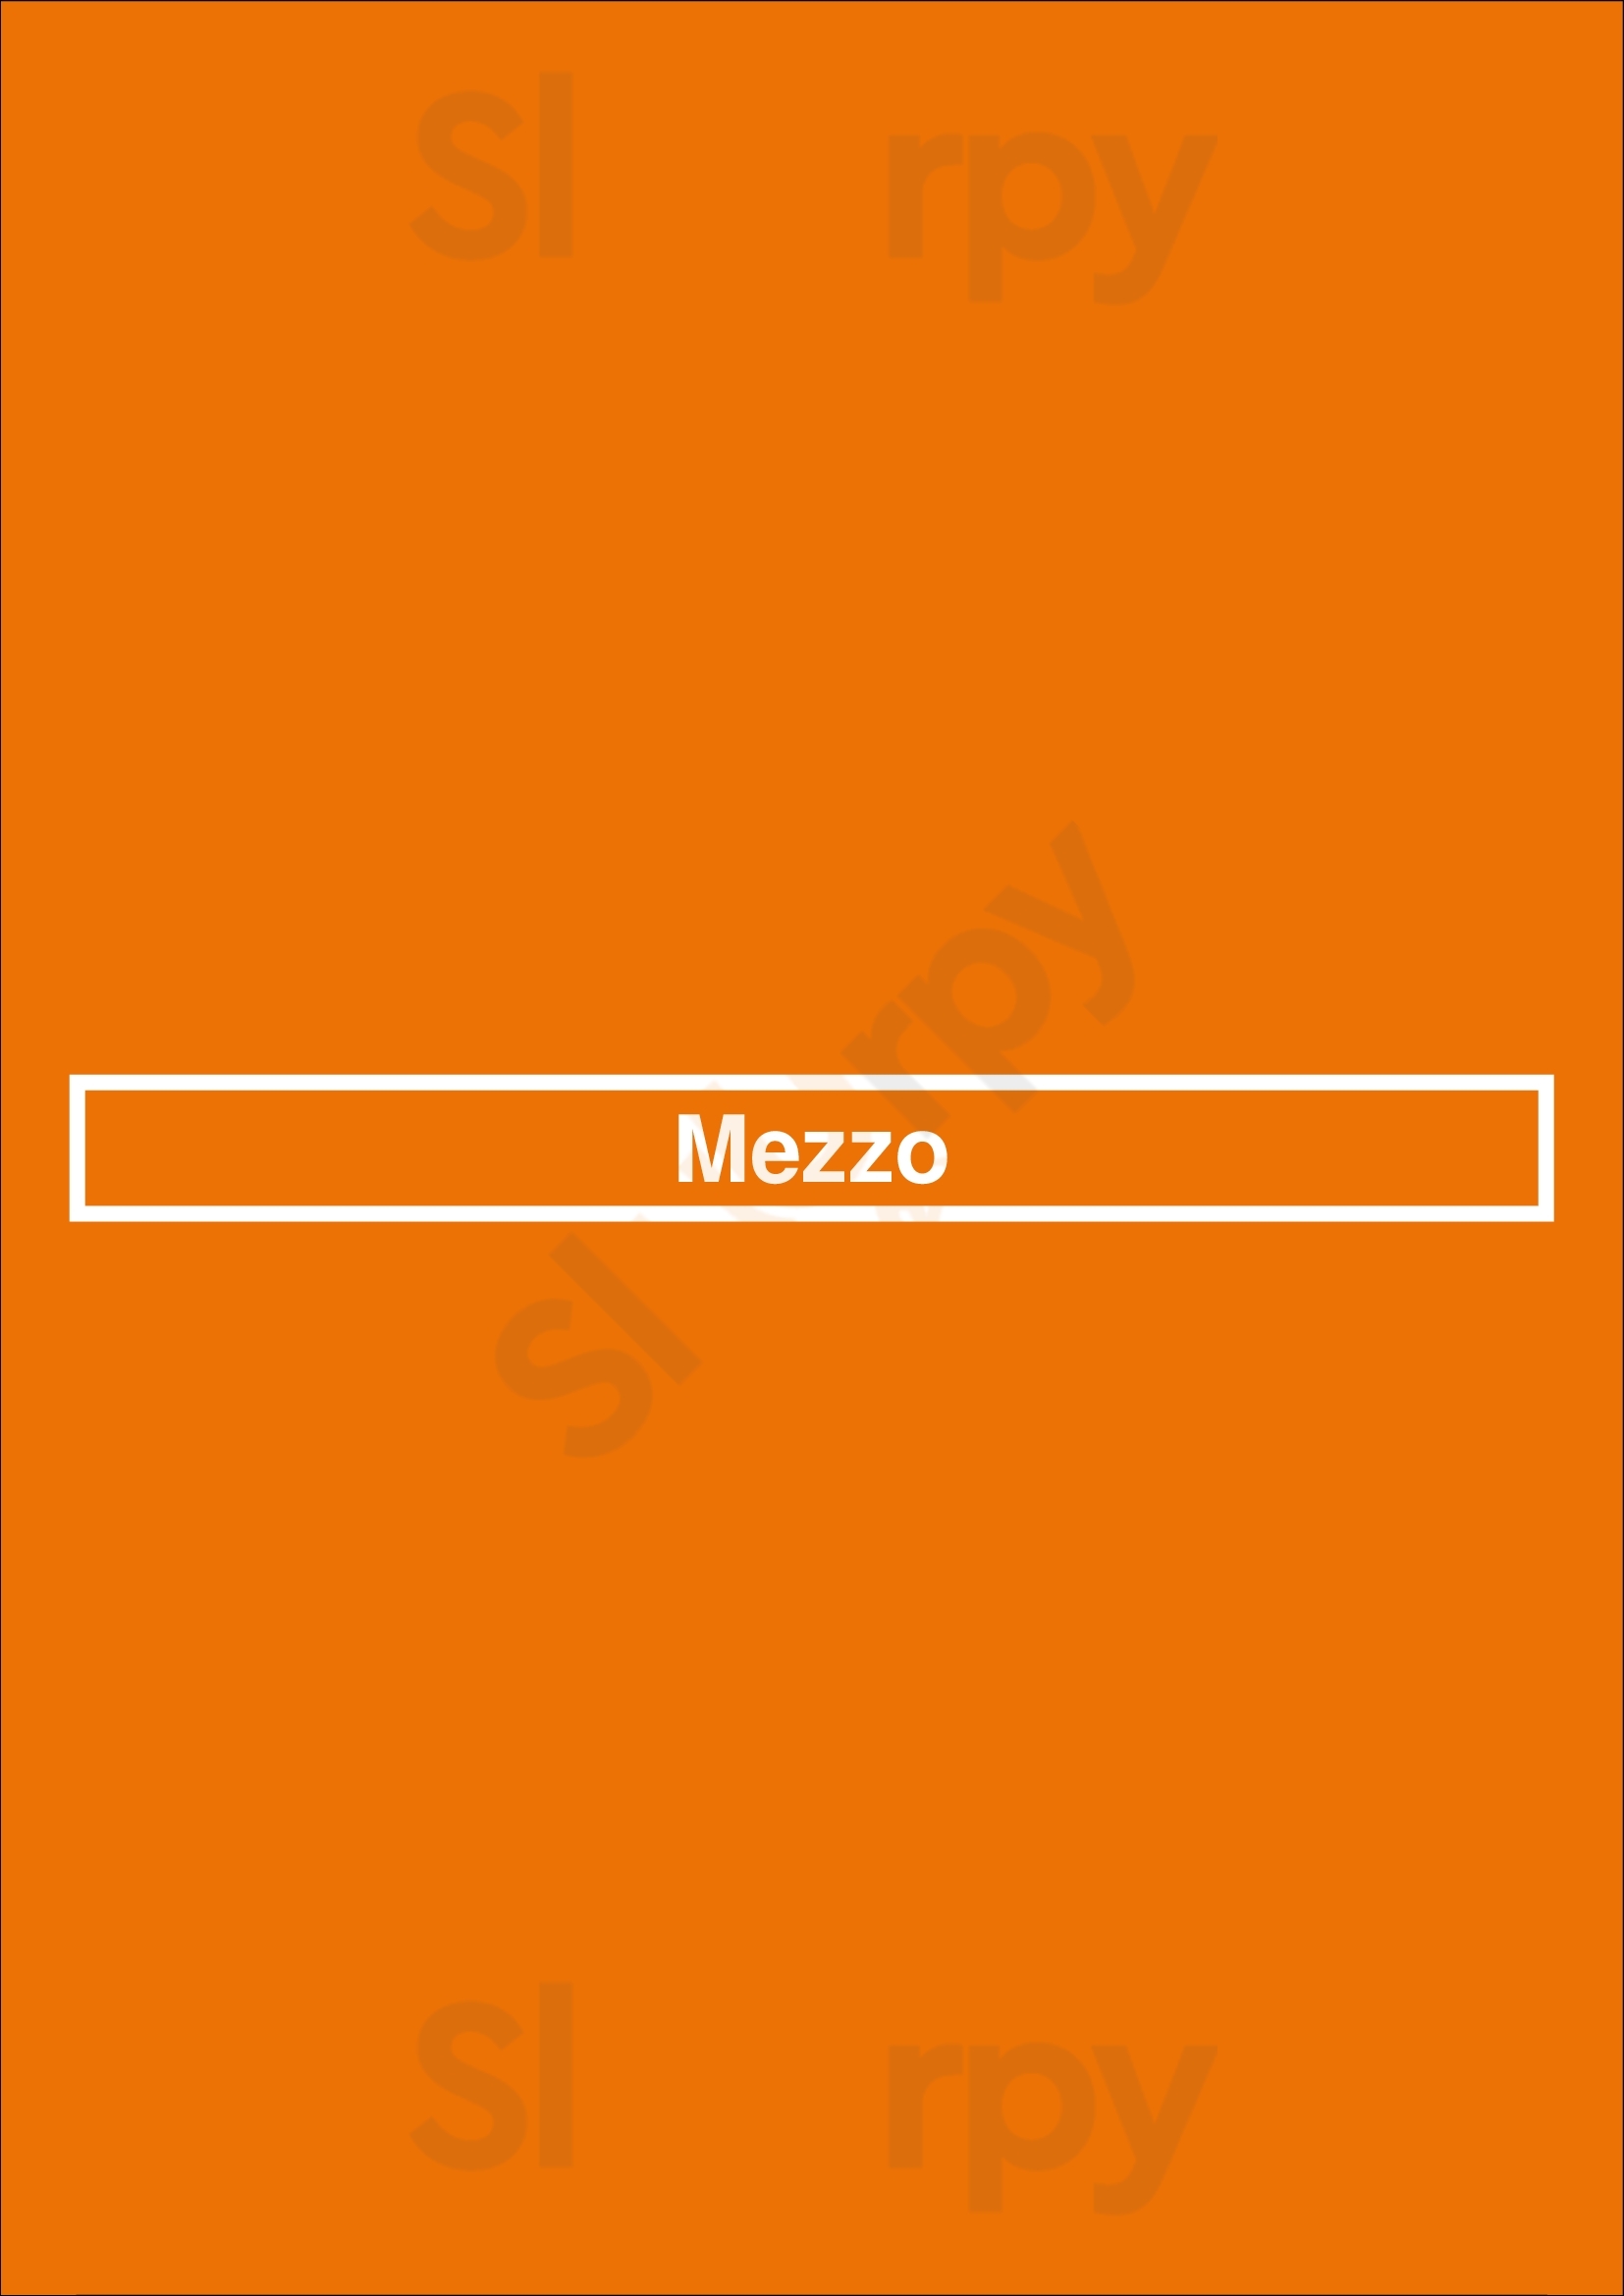 Mezzo Naples Menu - 1